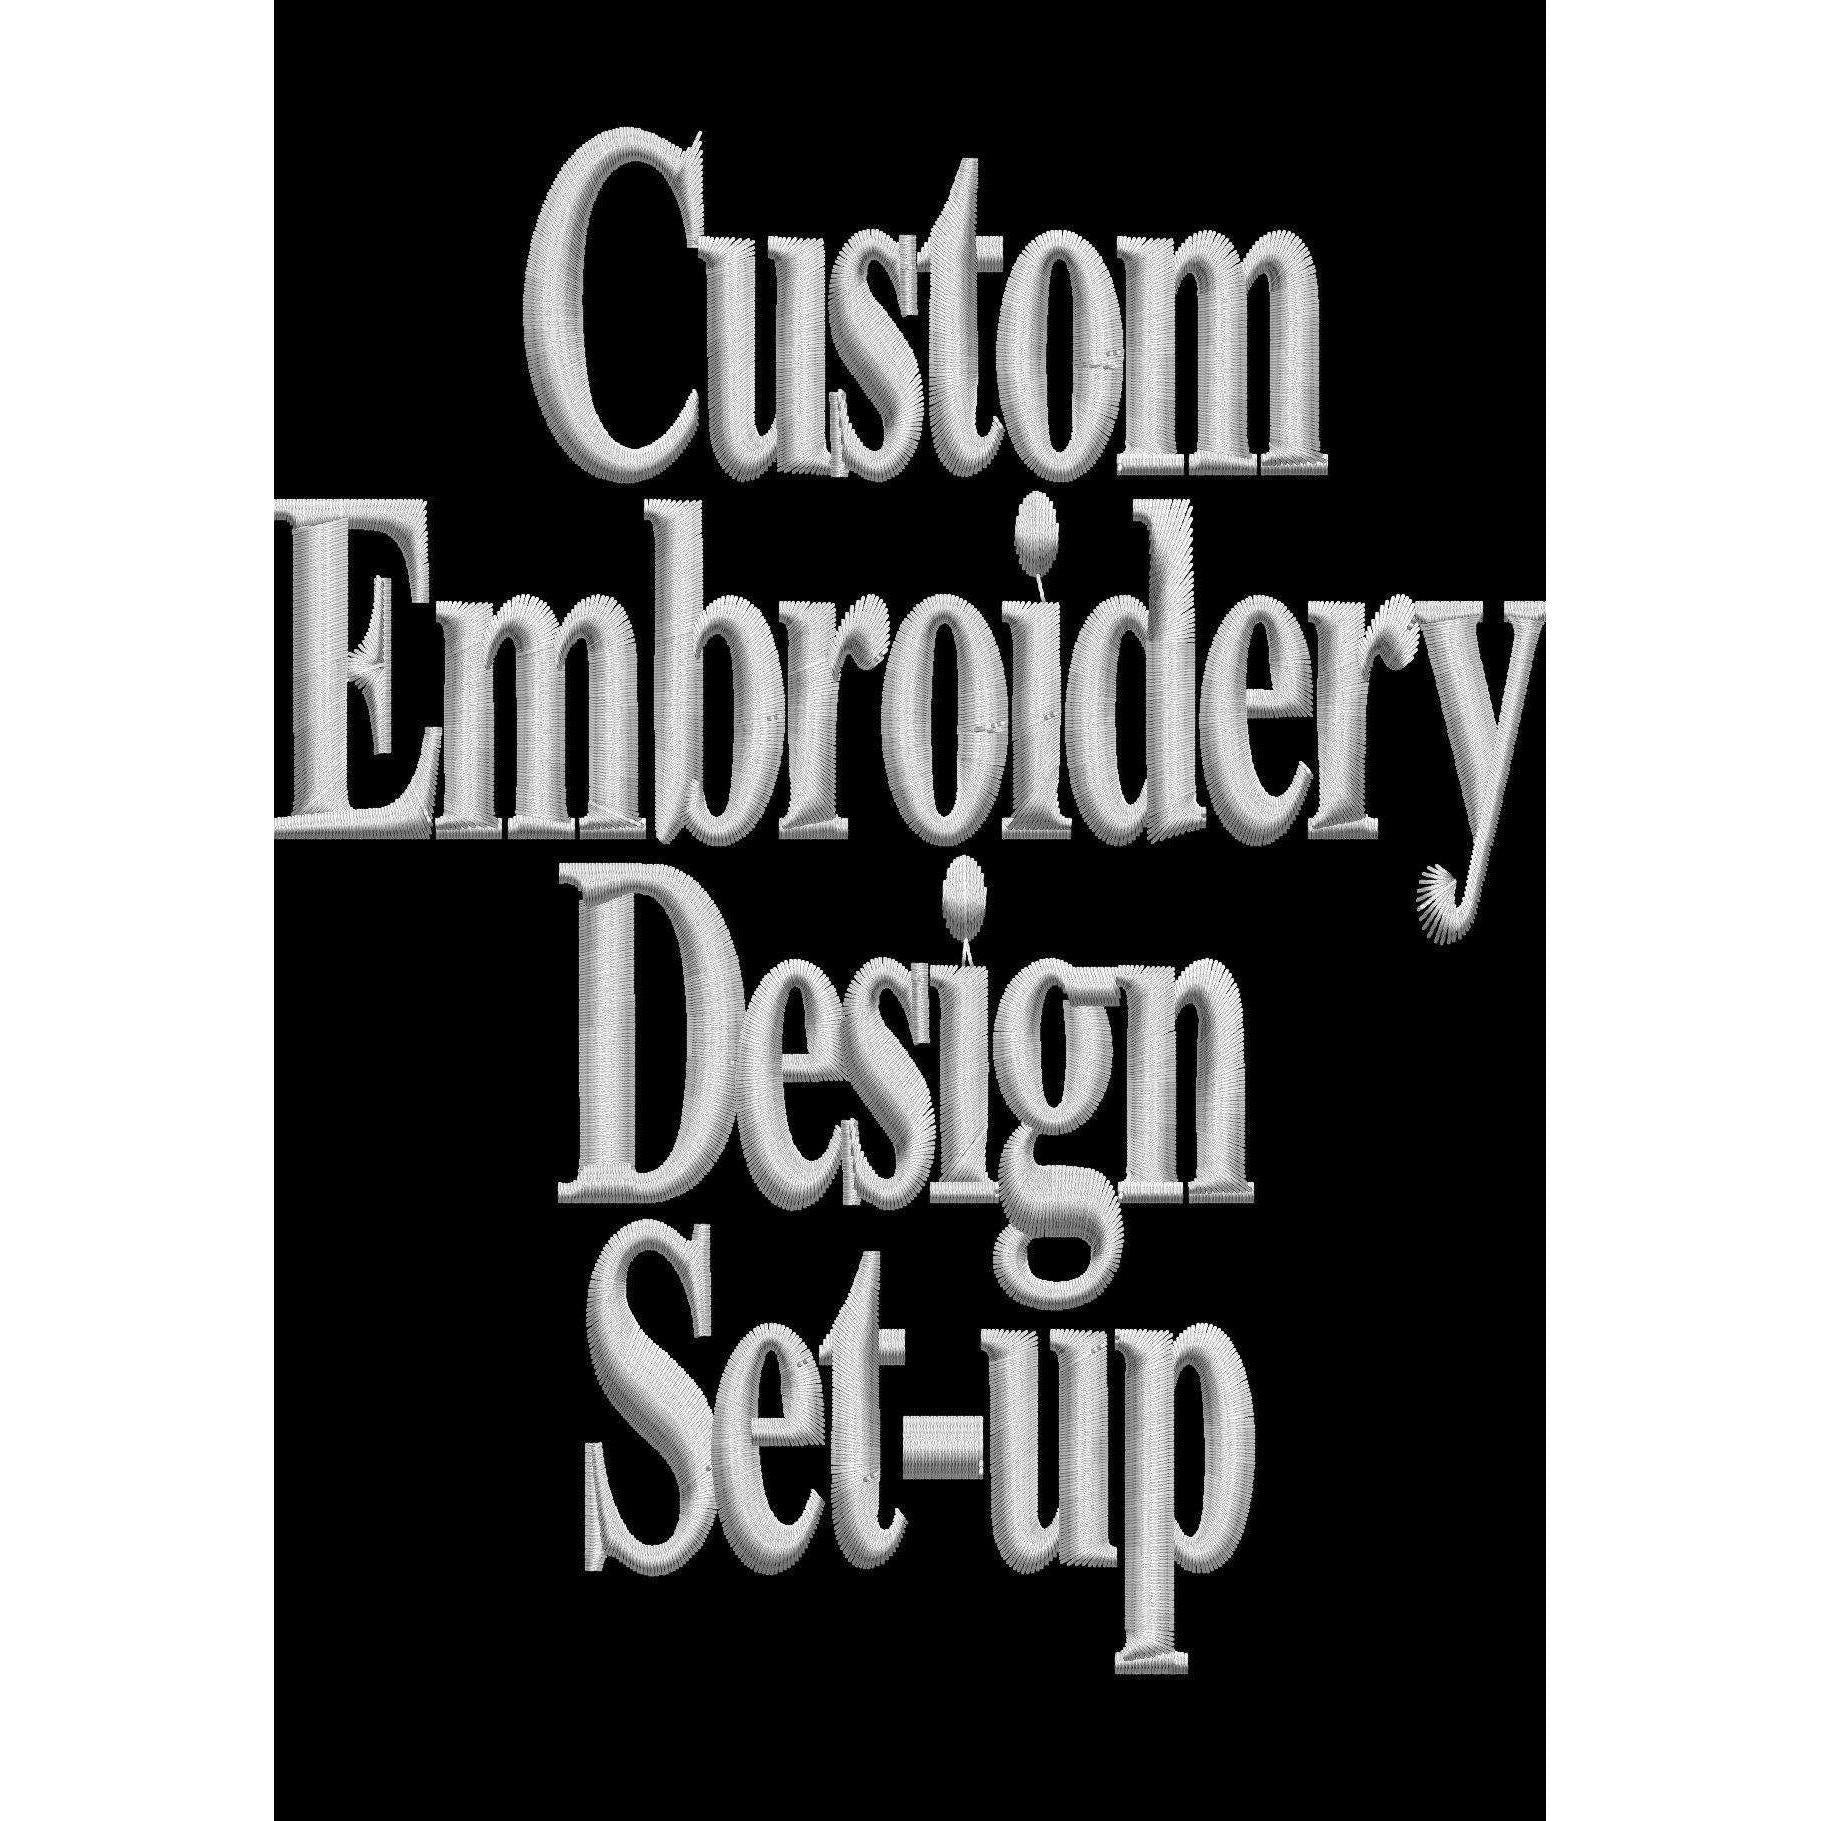 Custom Embroidery - Design Set Up-Beckys-Boutique.com